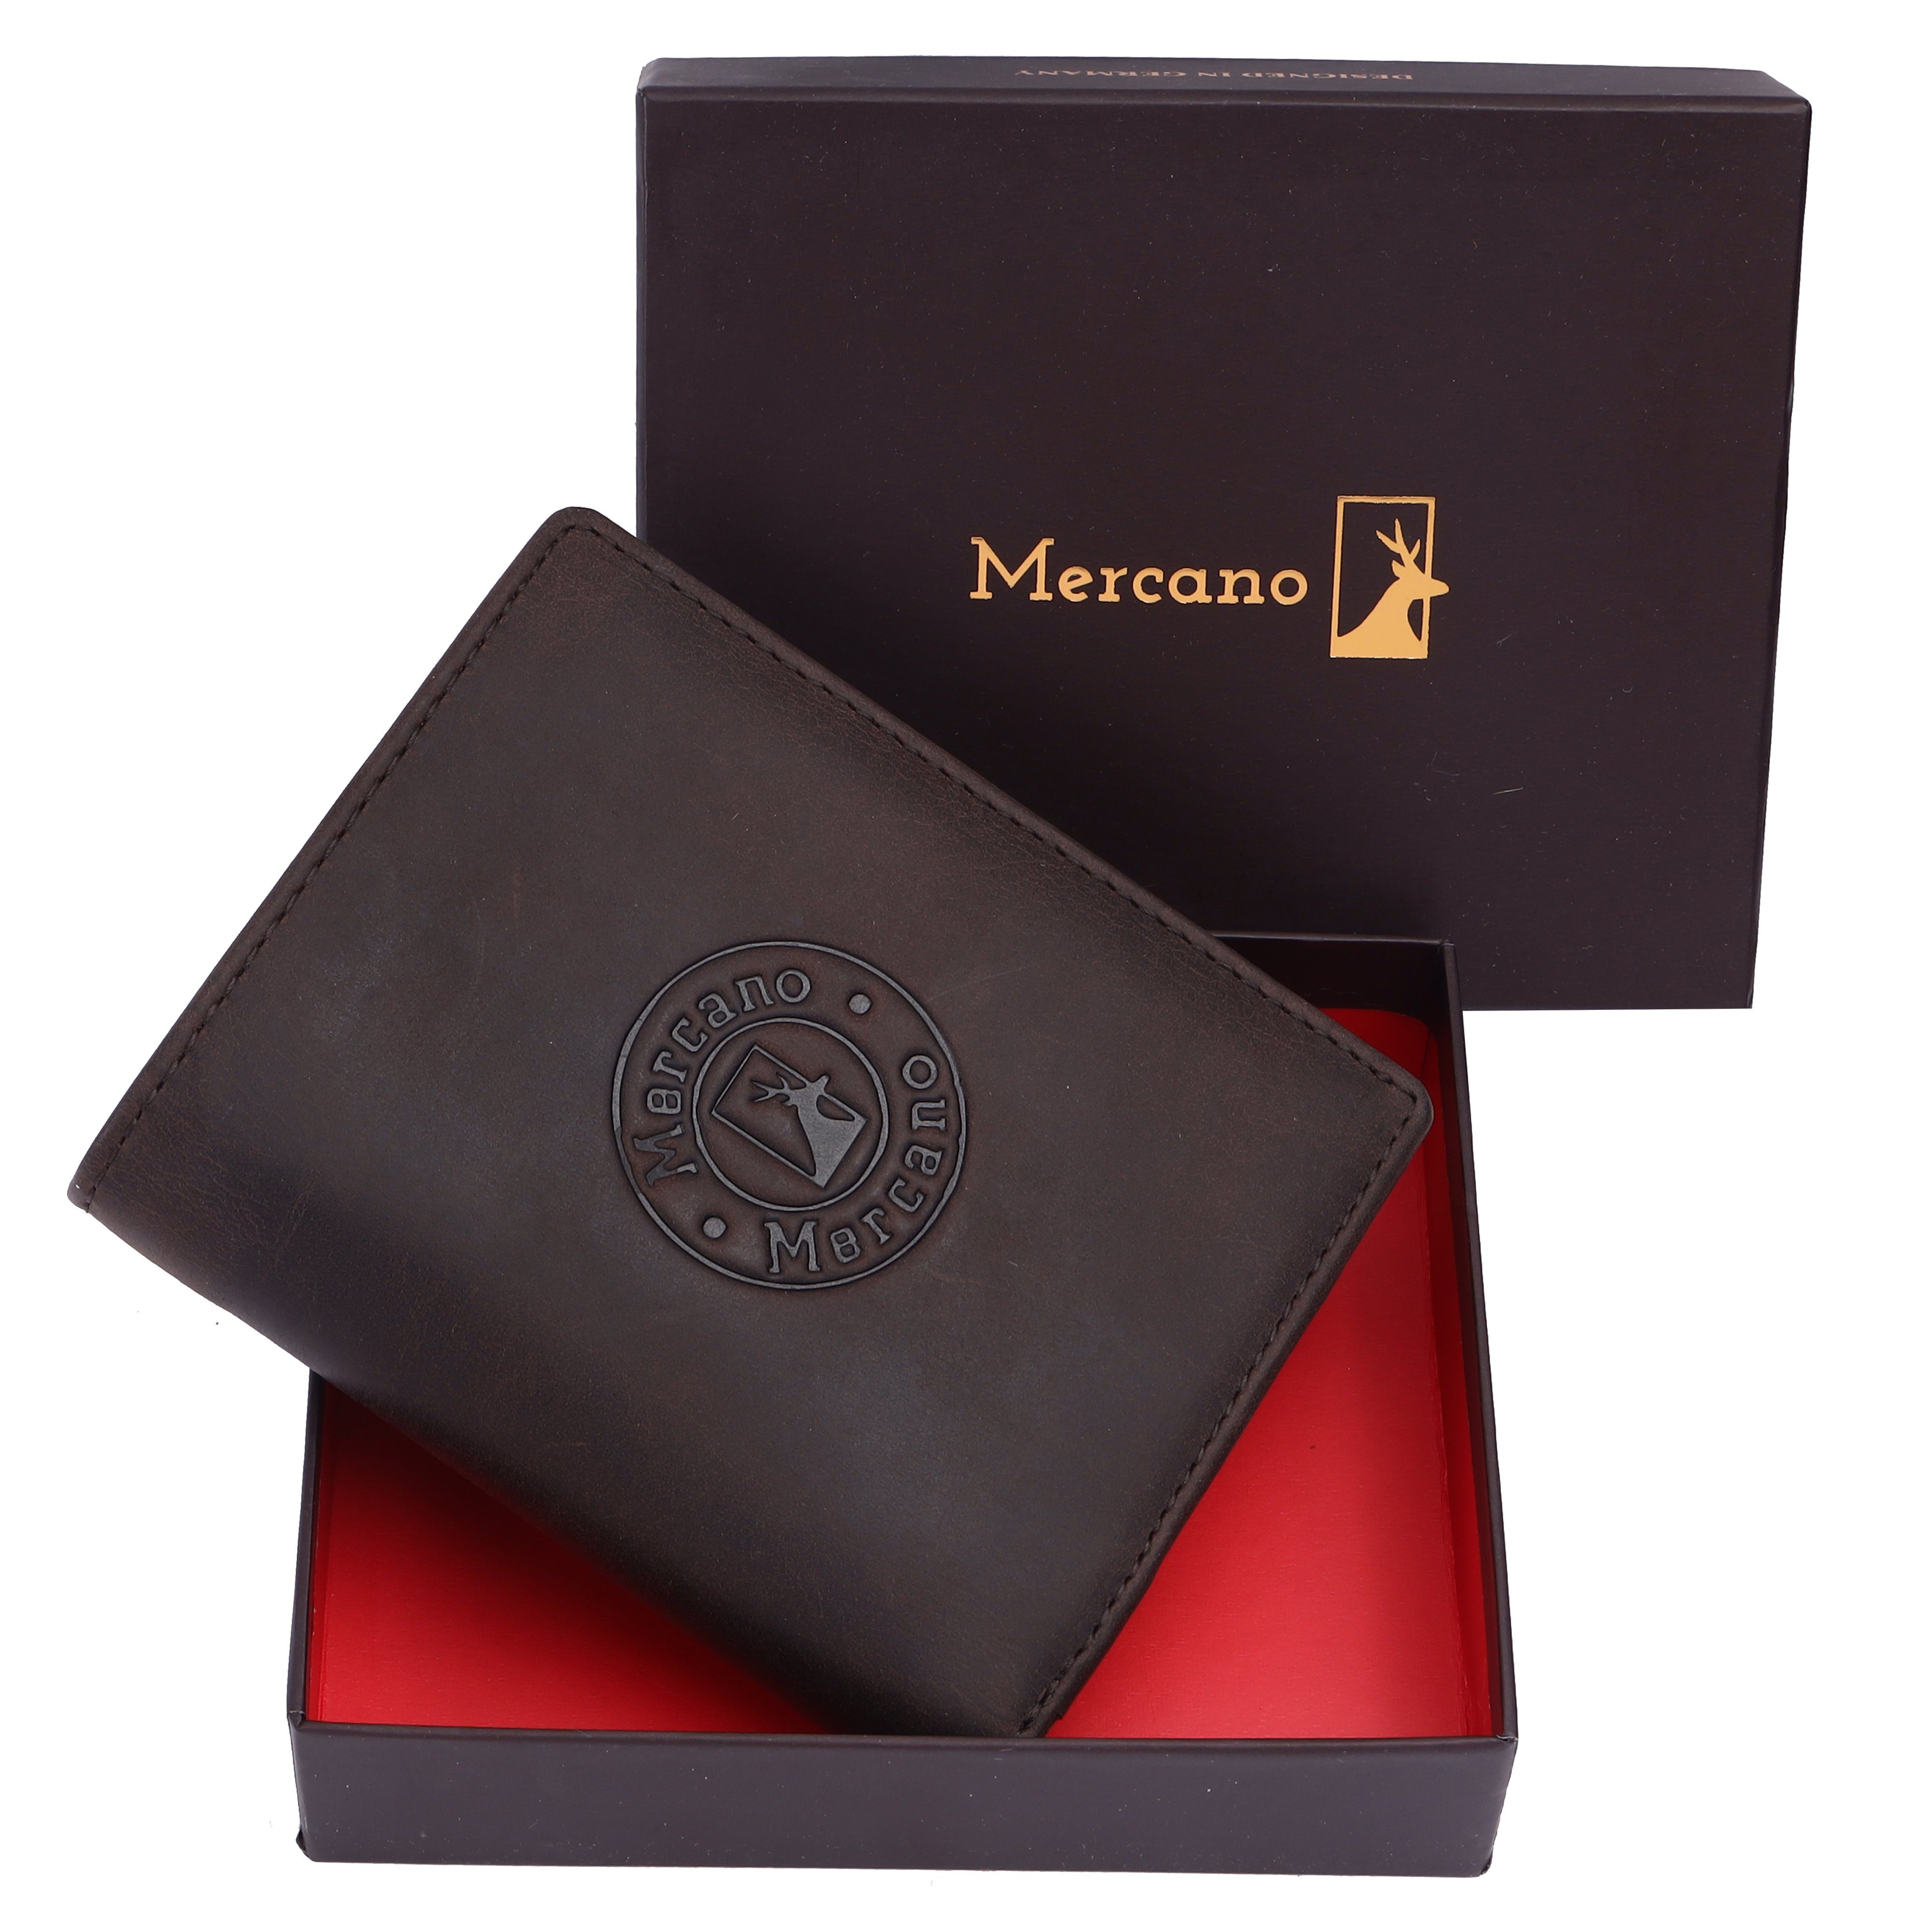 100% Vintage Leder, & integrierter Herren, inkl. RFID-Schutz Geldbörse Mercano aus Geschenkbox für